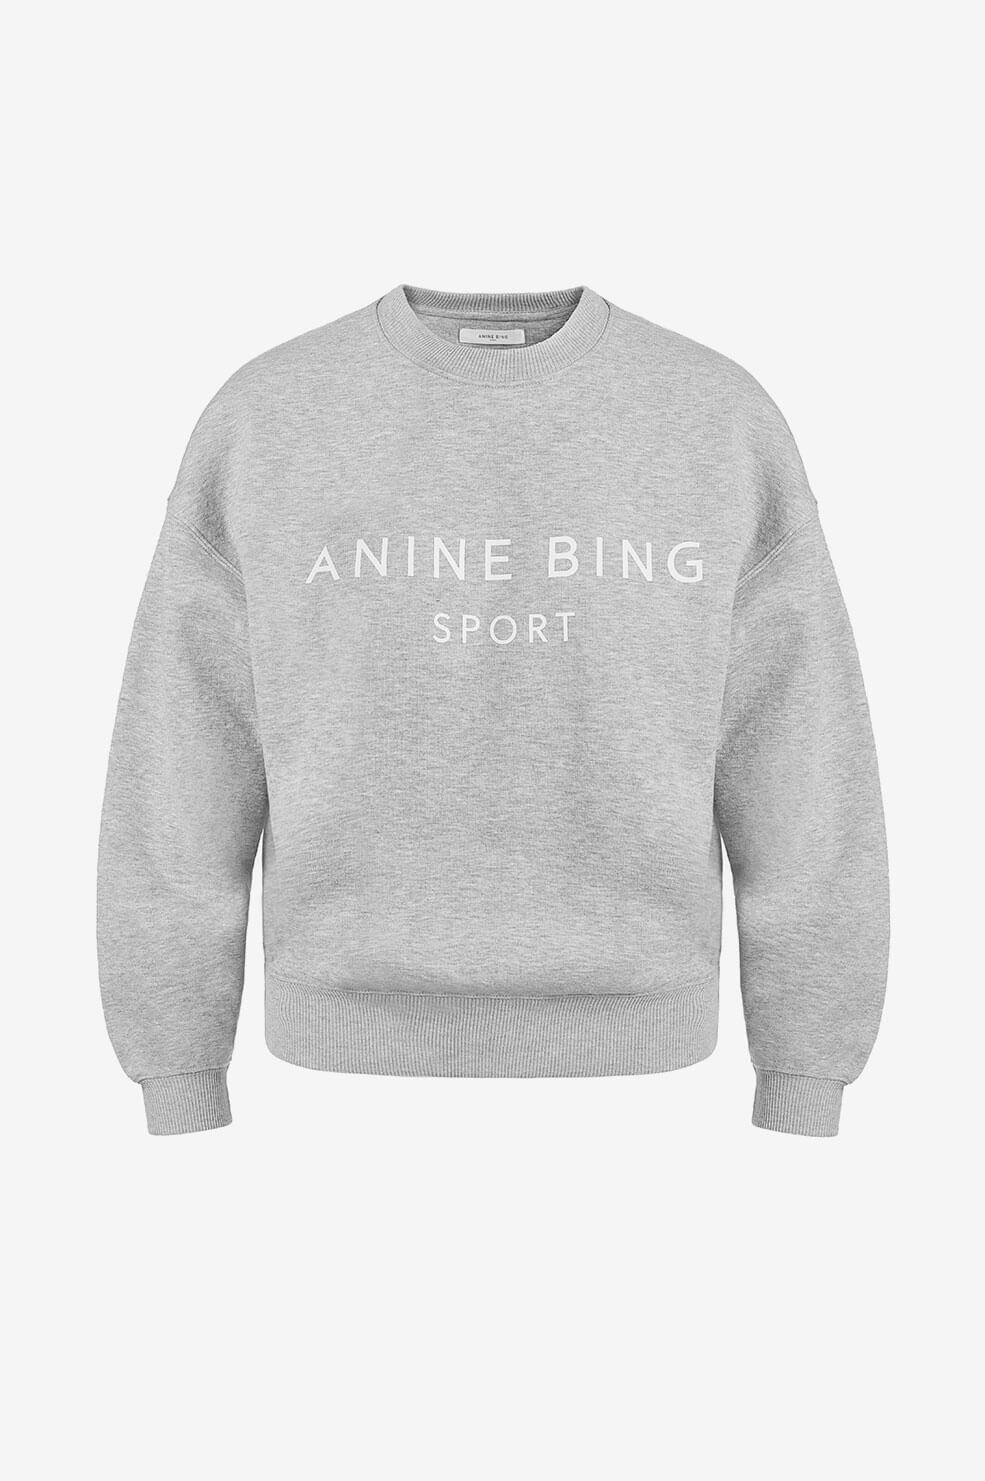 Anine Bing - Evan Sweatshirt in Heather Grey